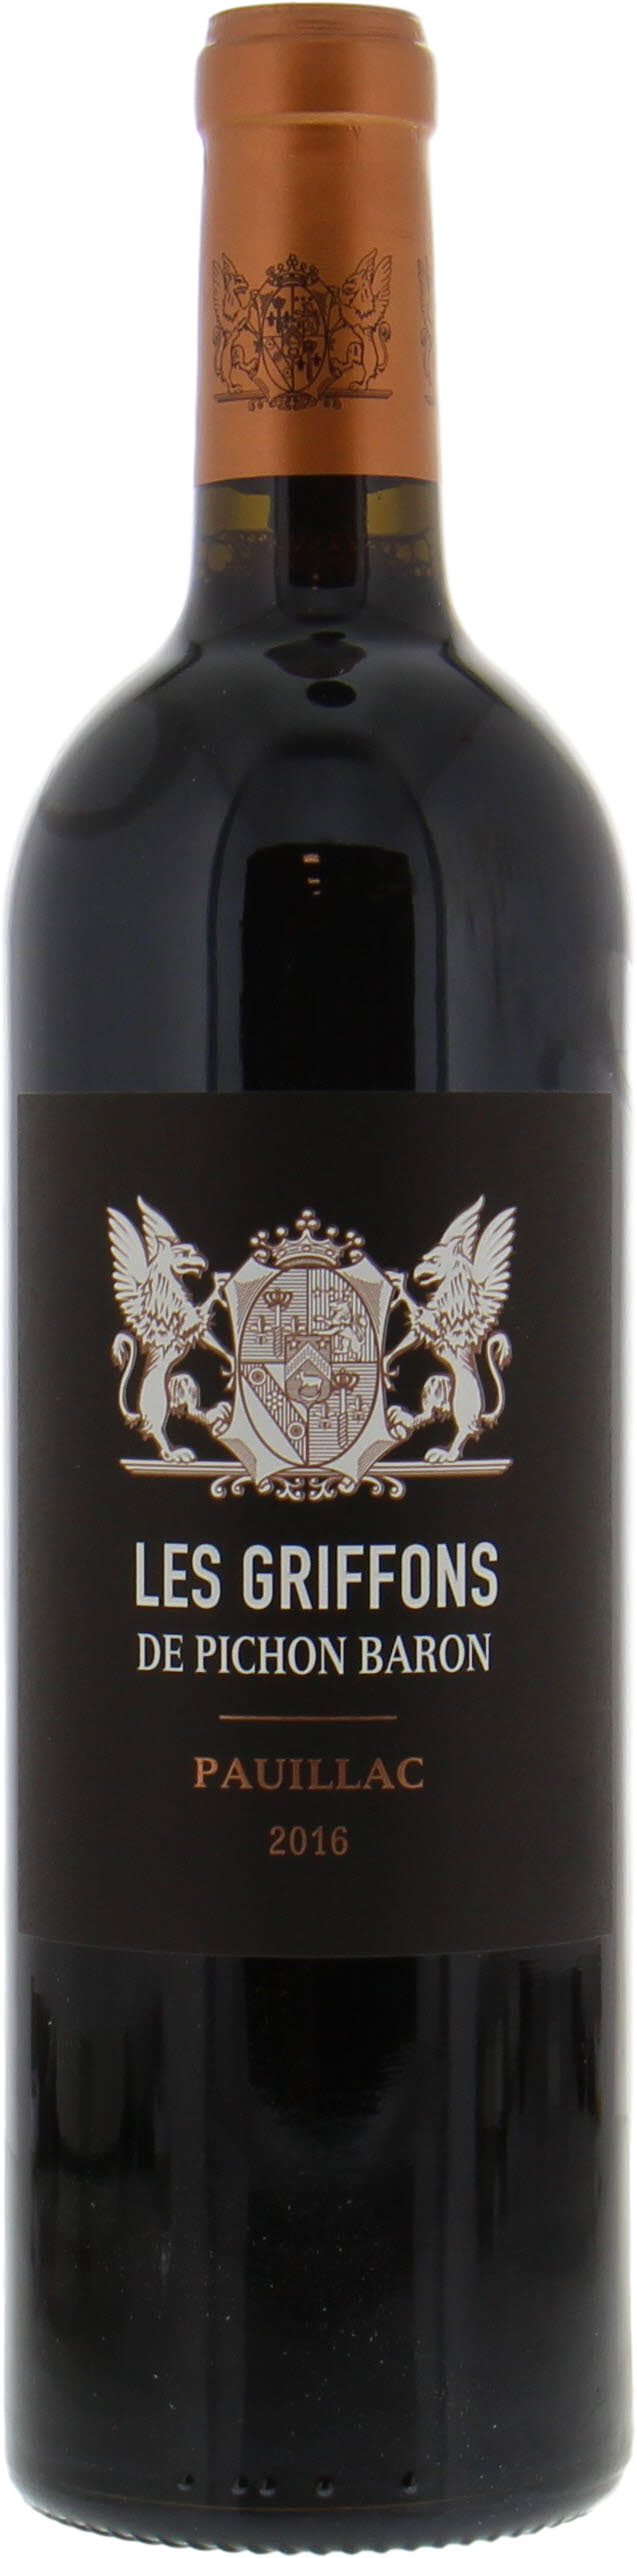 Les Griffons de Pichon Baron 2016 - Chateau Pichon Longueville Baron ...